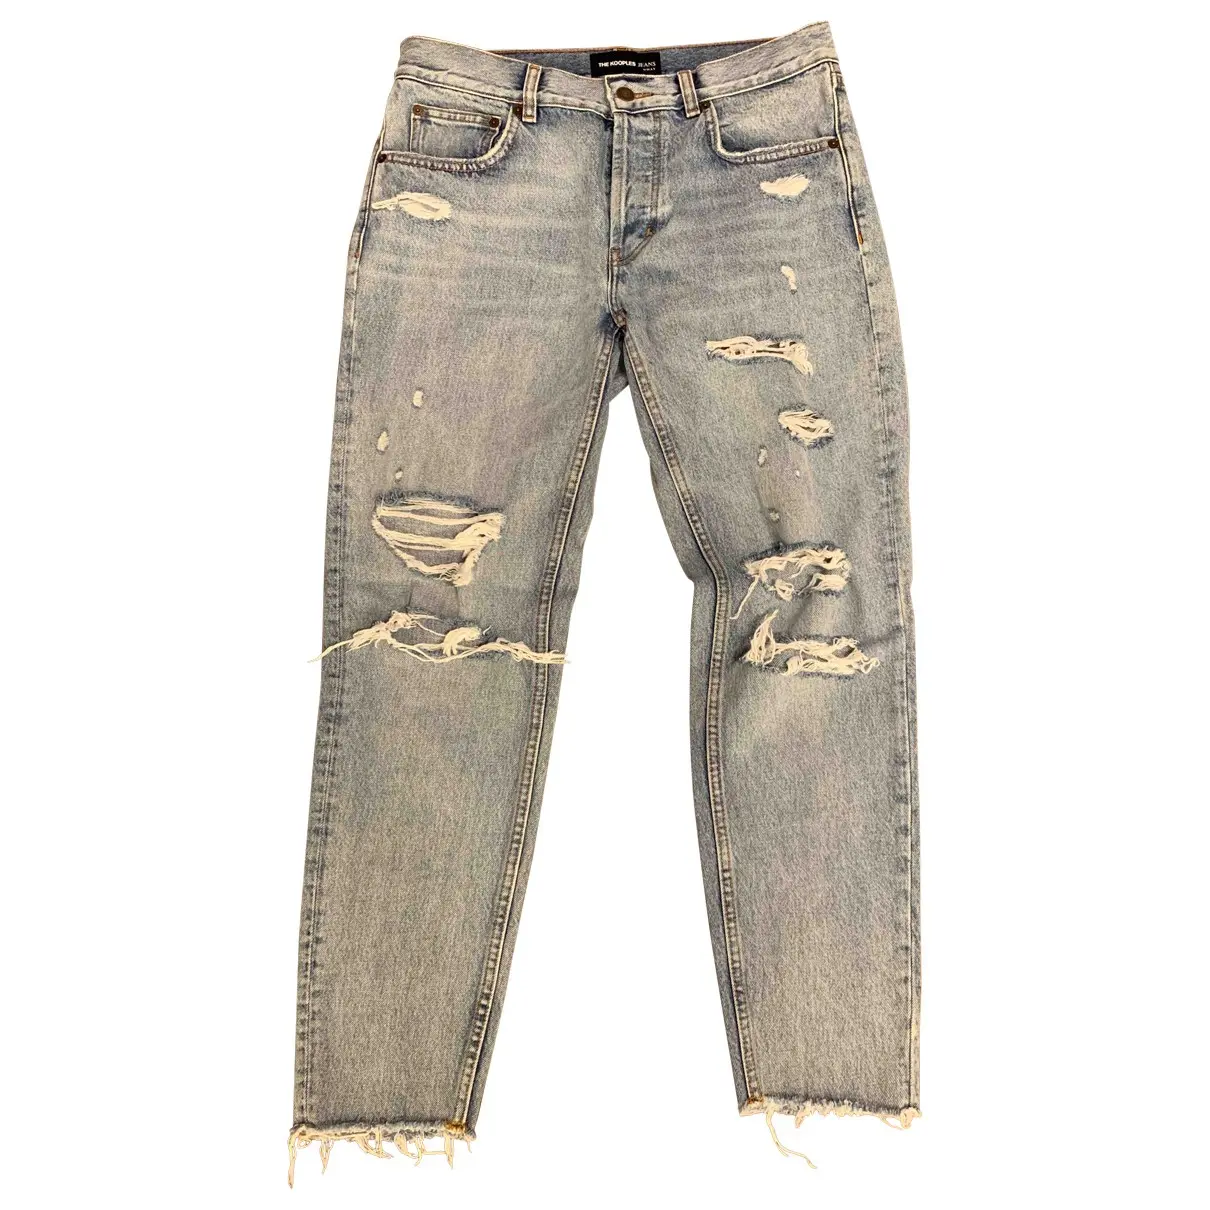 Blue Denim - Jeans Jeans Spring Summer 2019 The Kooples